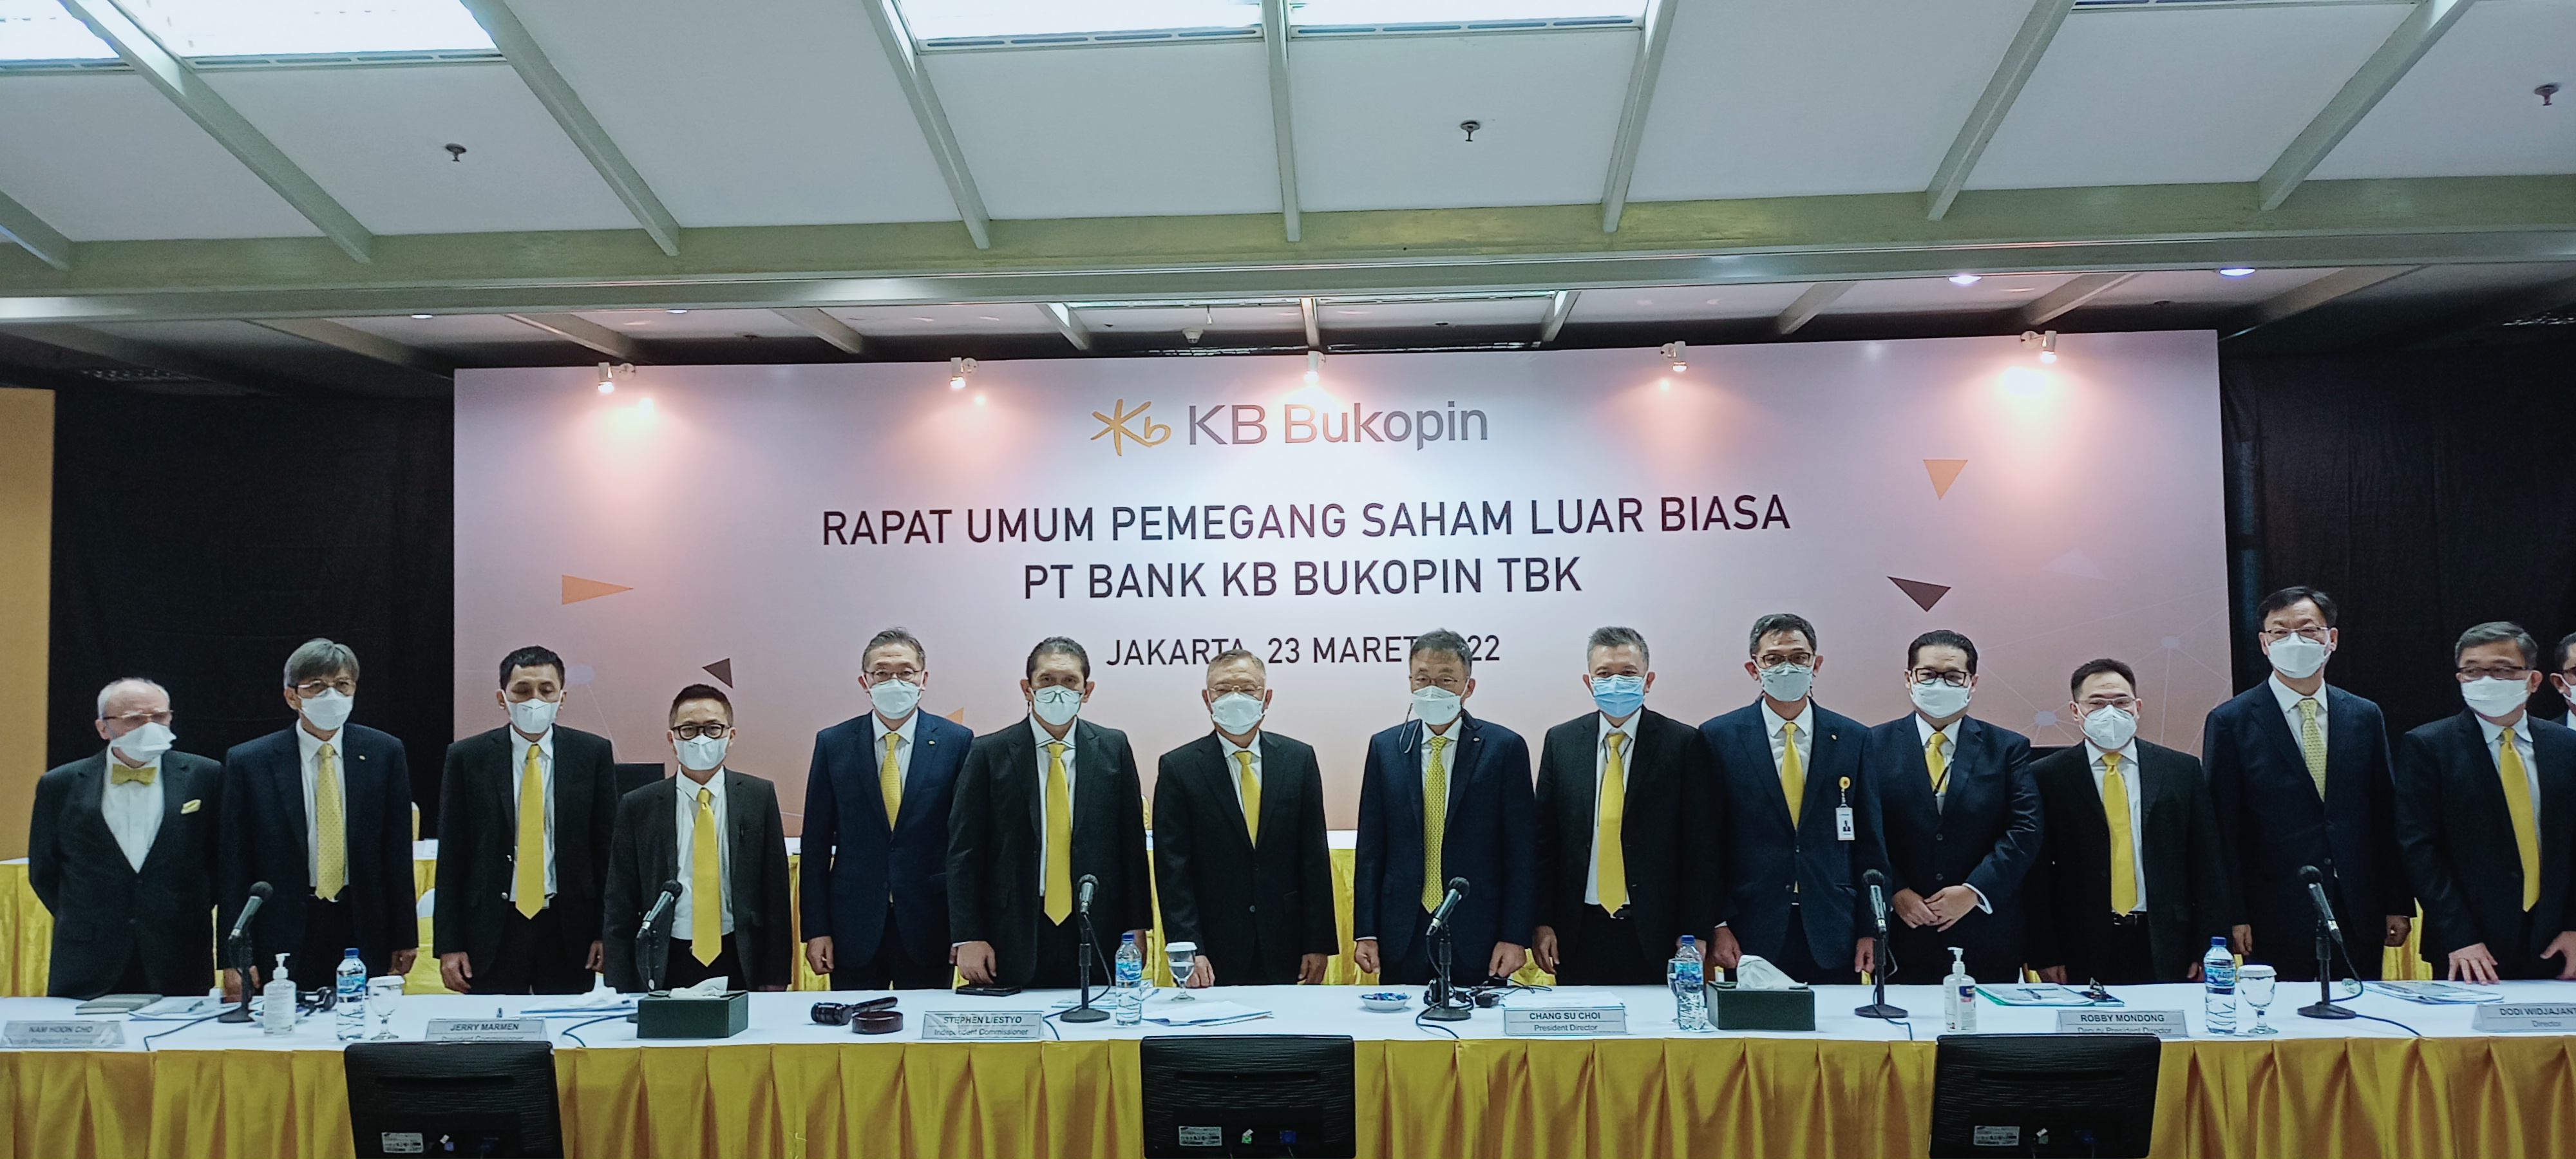 Angkat Jin Bum Kim Jadi Direktur, KB Bukopin (BBKP) Mantap Ubah Model Bisnis